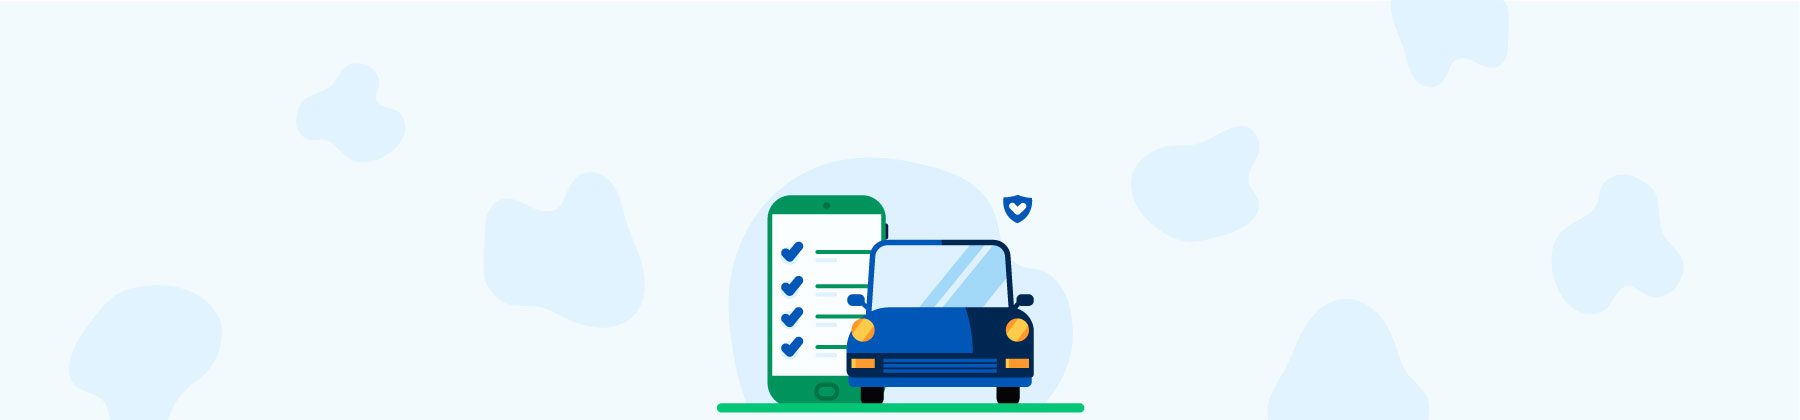 Illustrazione di una macchina blu e di uno smartphone aperto su una pagina di scelta delle opzioni dell'assicurazione auto.